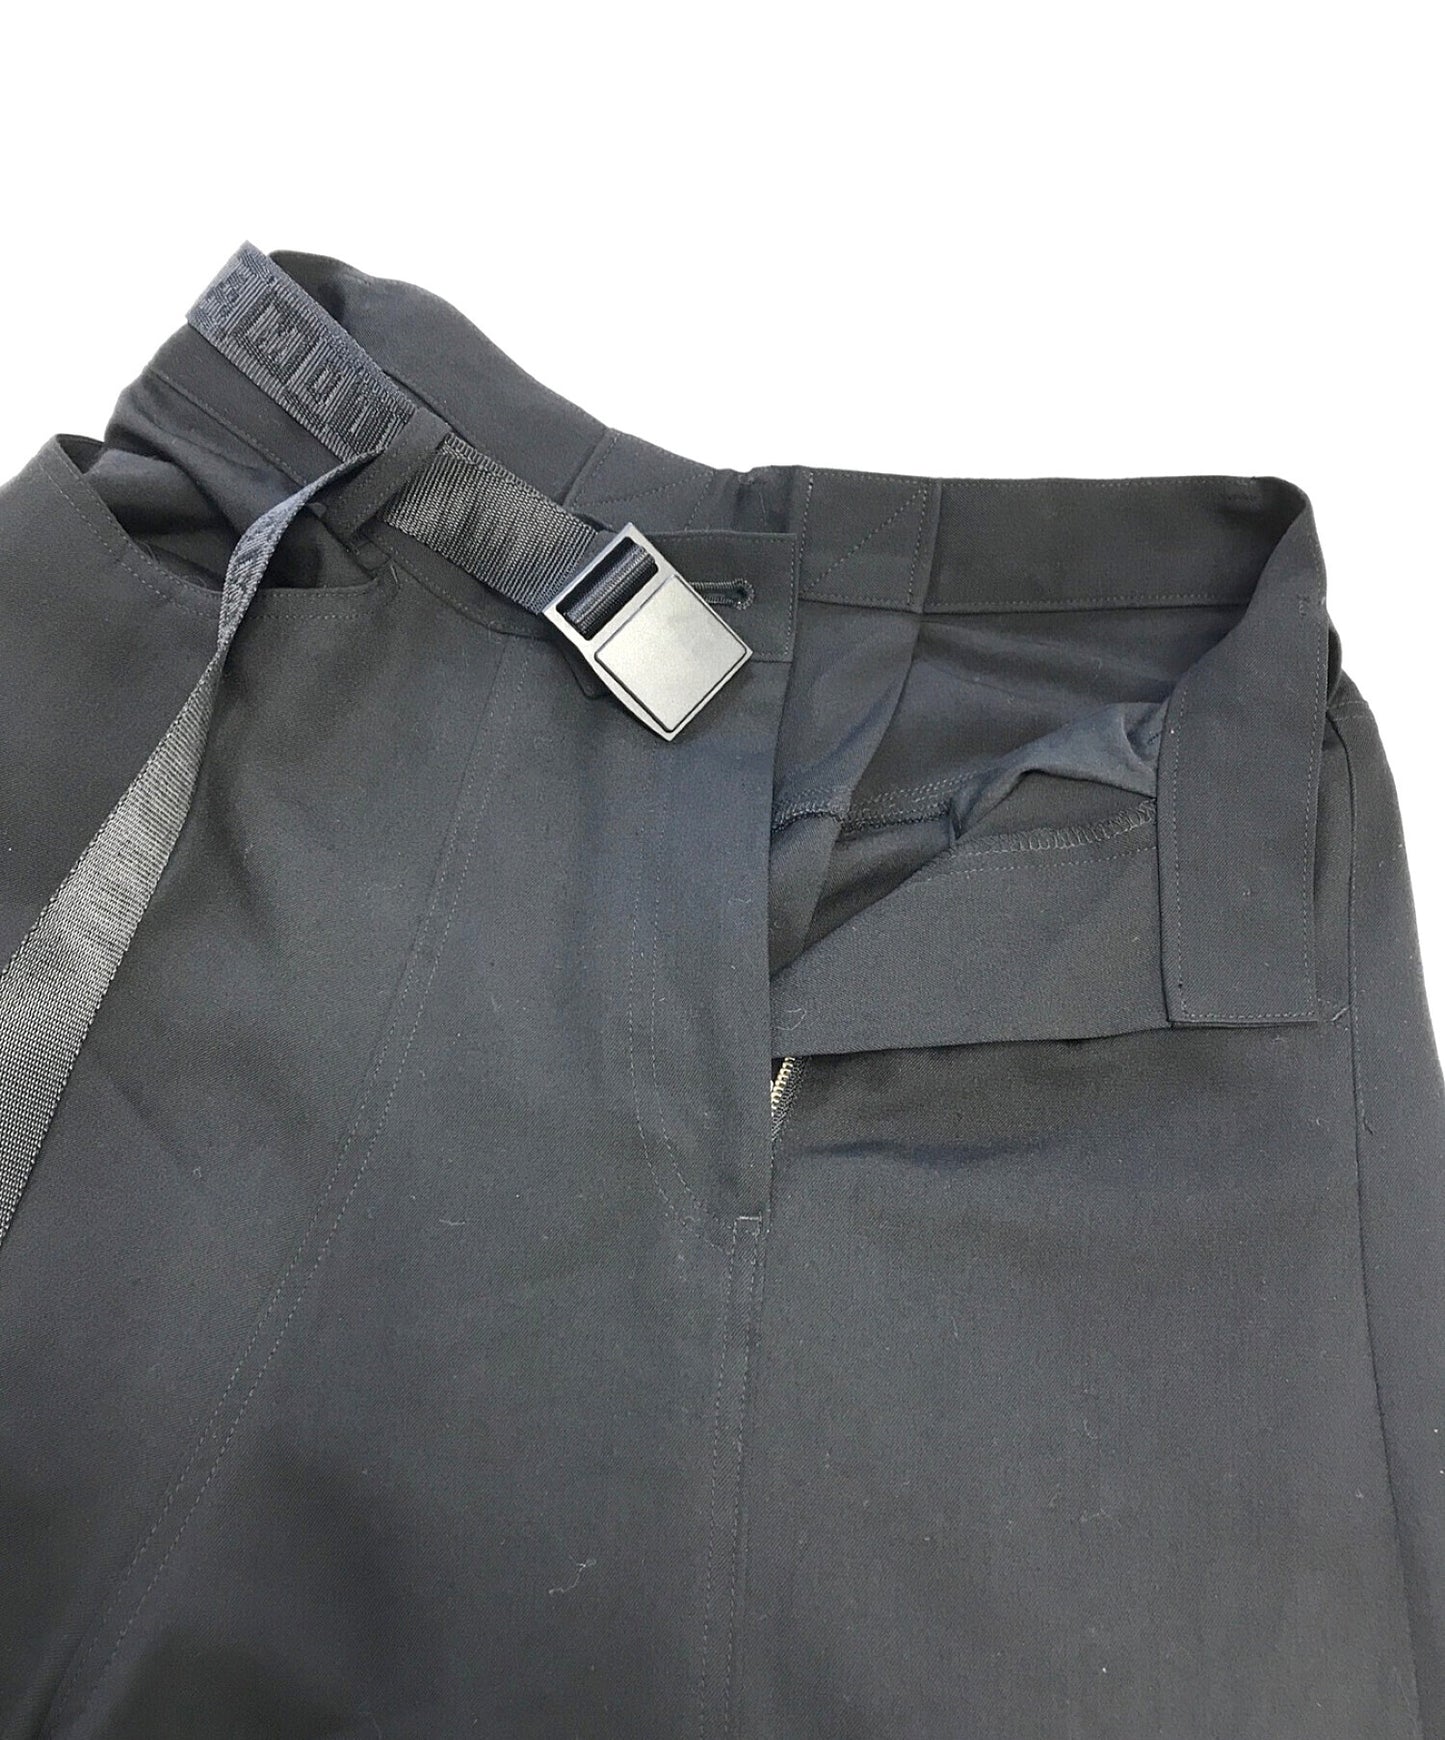 กฎระเบียบ Yohji Yamamoto Wool Gaber Hakama Pants พร้อมเข็มขัด FJ-P51-100